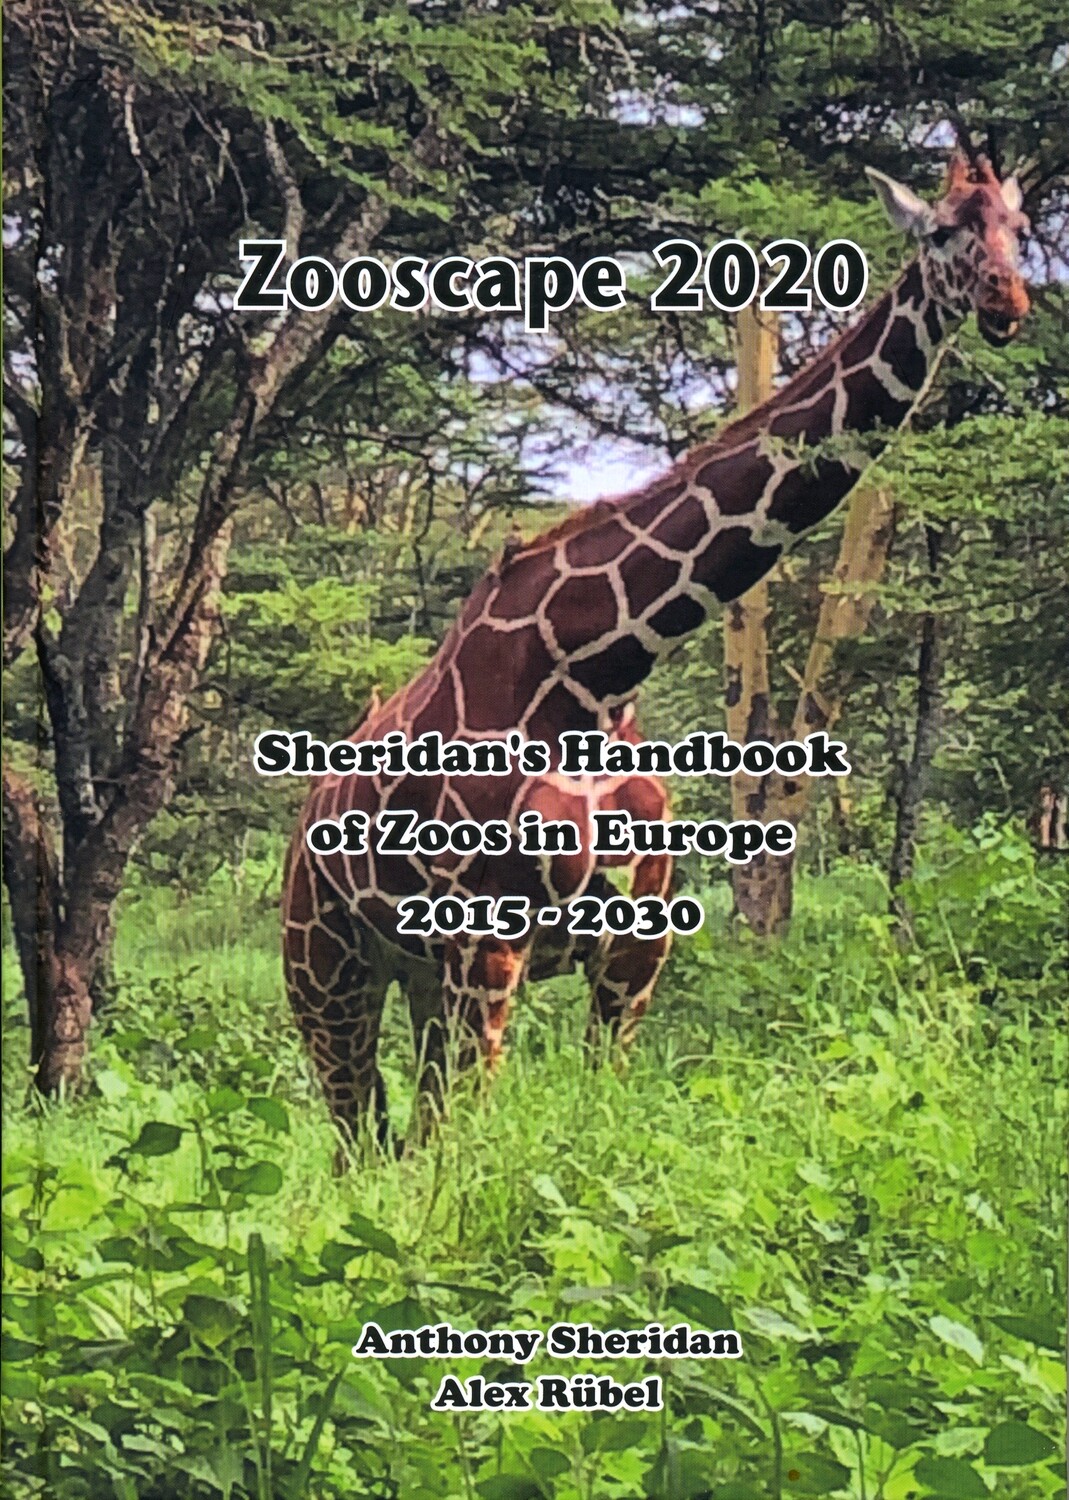 Sheridan's Handbook Of Zoos in Europe 2015-2030